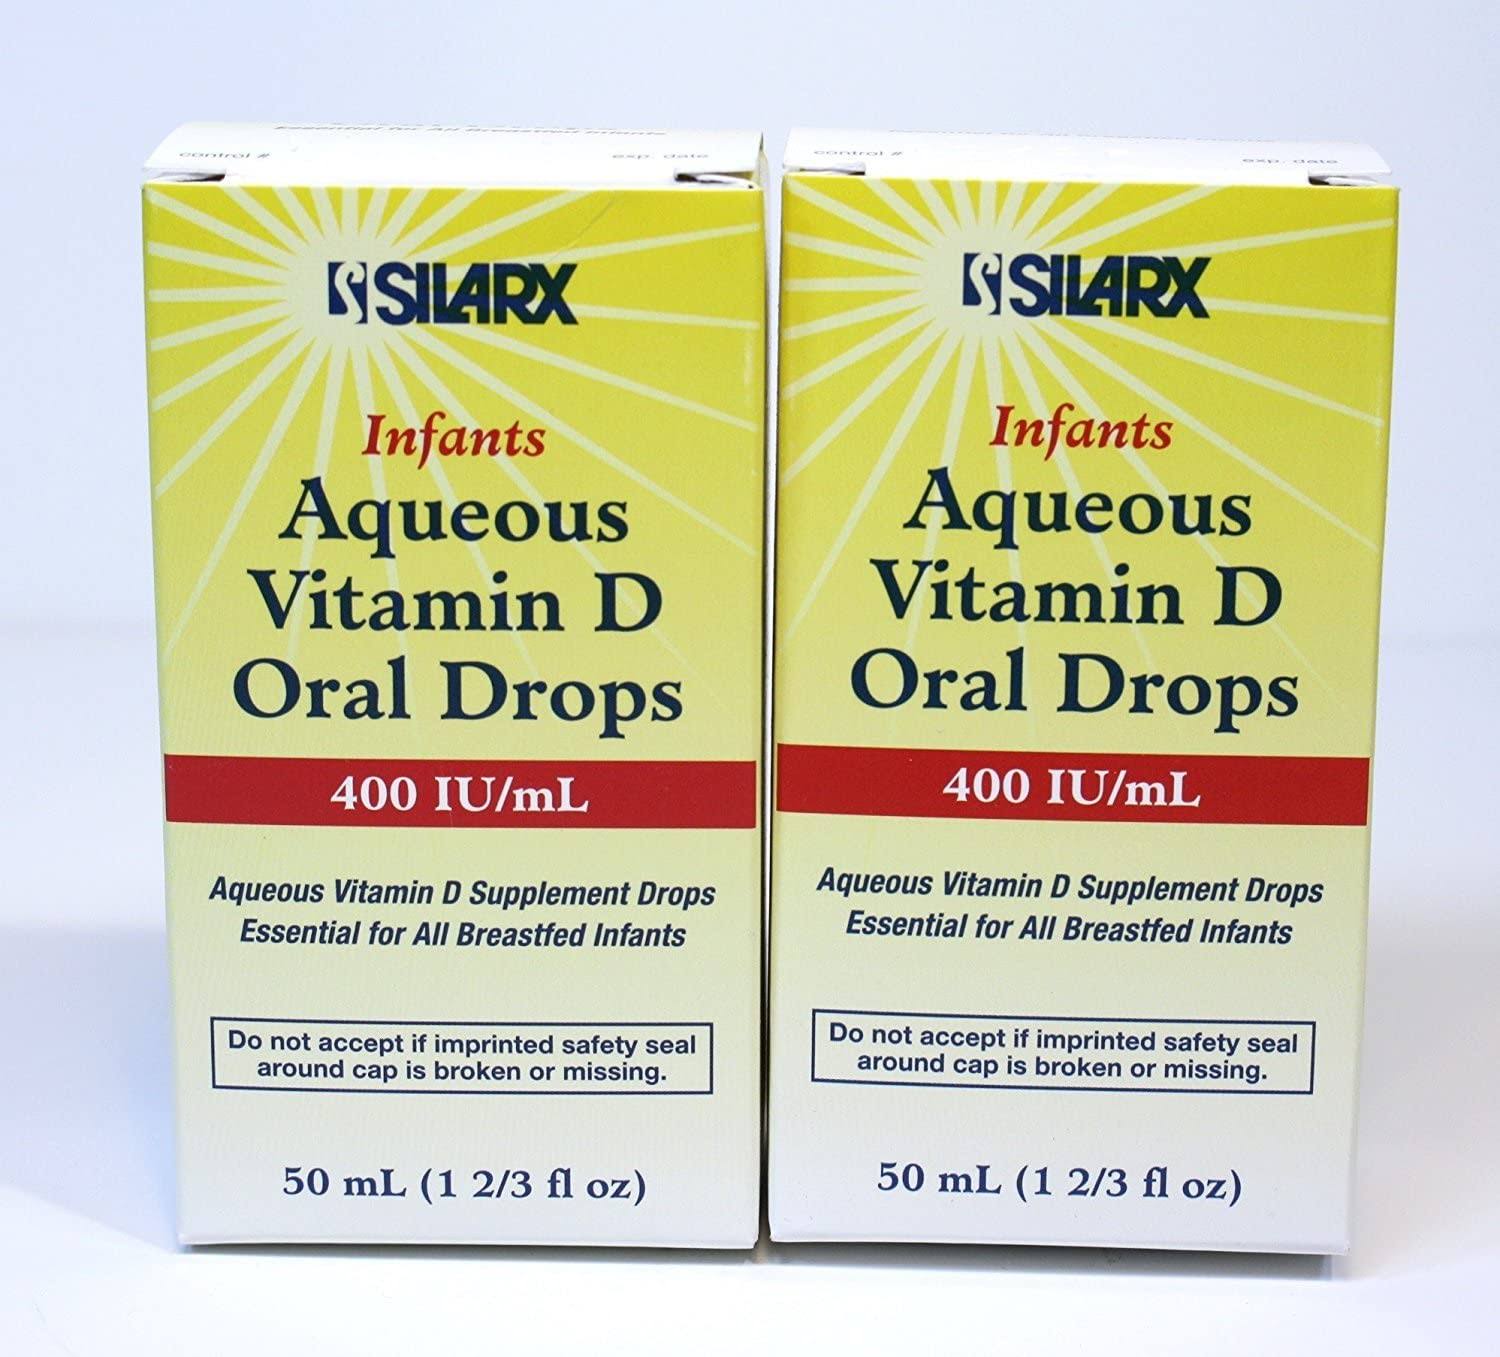 Silarx Aqueous Vitamin D Oral Drops 50ml